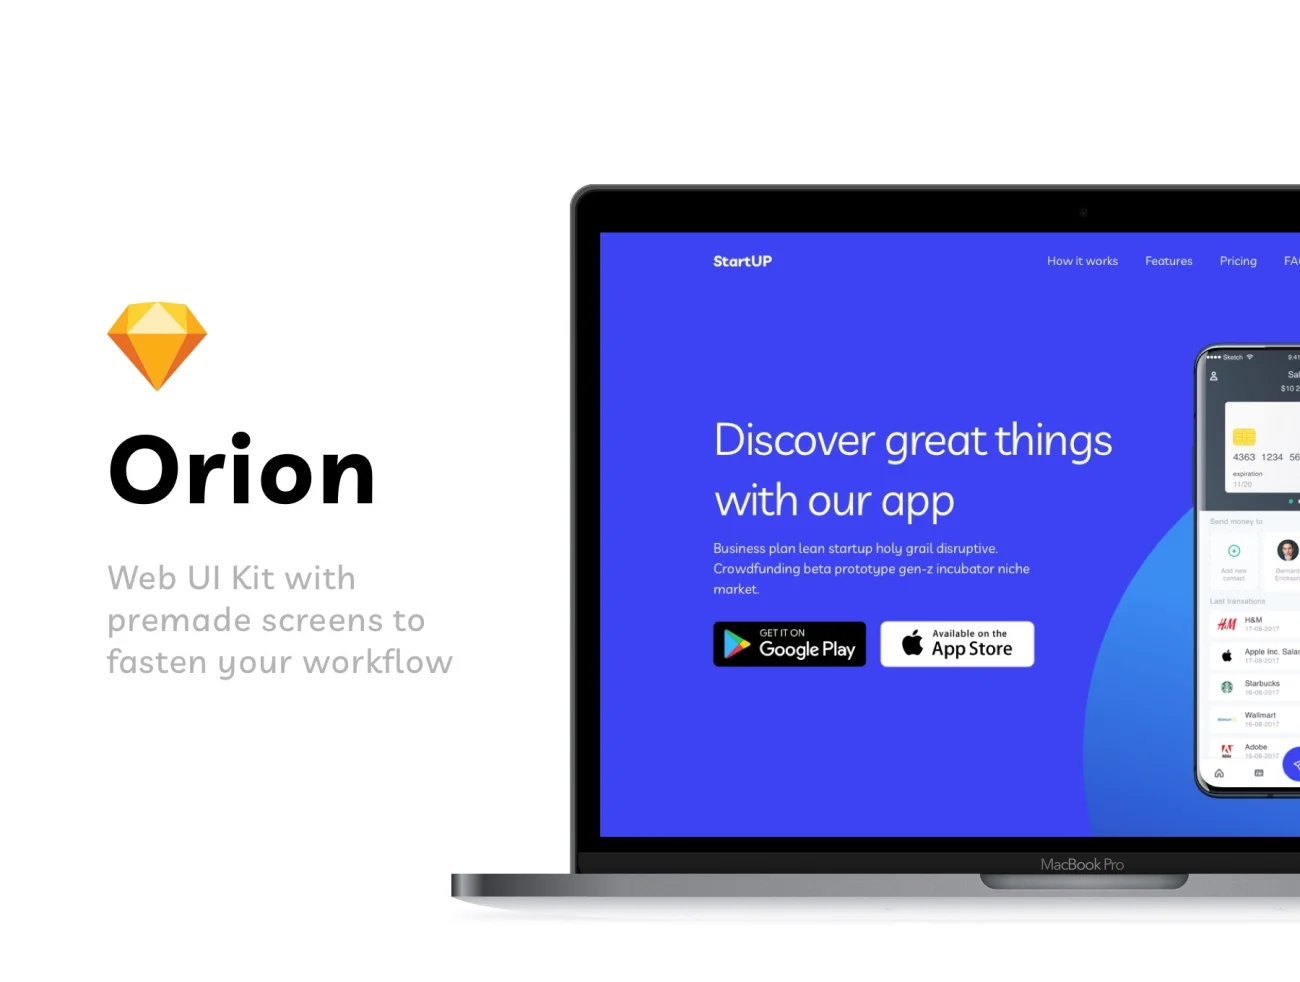 Orion Web UI Kit 网络代理seo平台网站用户界面套件-商业金融、插画、数据演示、网站、金融理财-到位啦UI